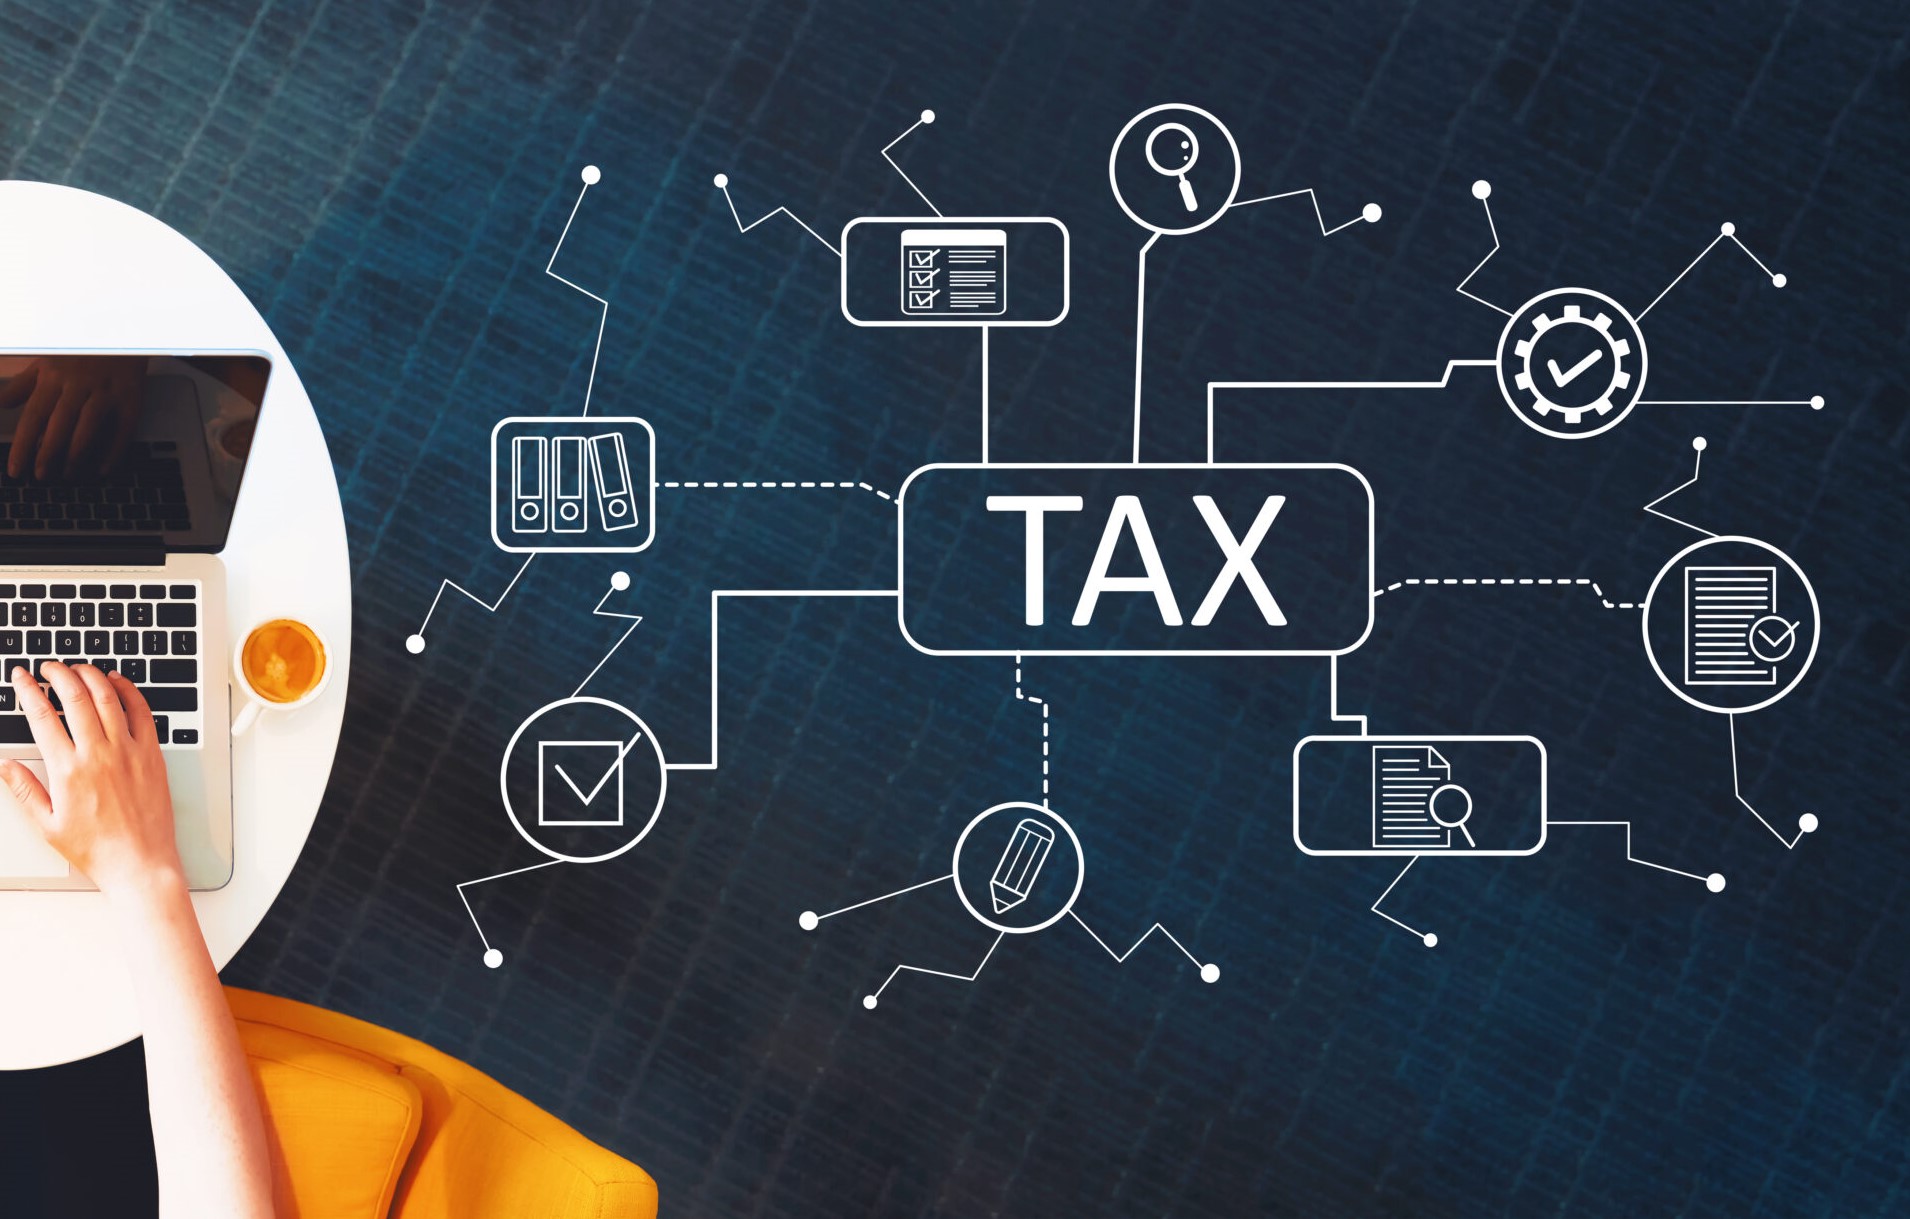 Dịch vụ khai thuế TNCN cho người nước ngoài tại Việt Nam hỗ trợ cá nhân hoặc doanh nghiệp FDI trong việc thực hiện nghĩa vụ thuế một cách đầy đủ và chính xác.